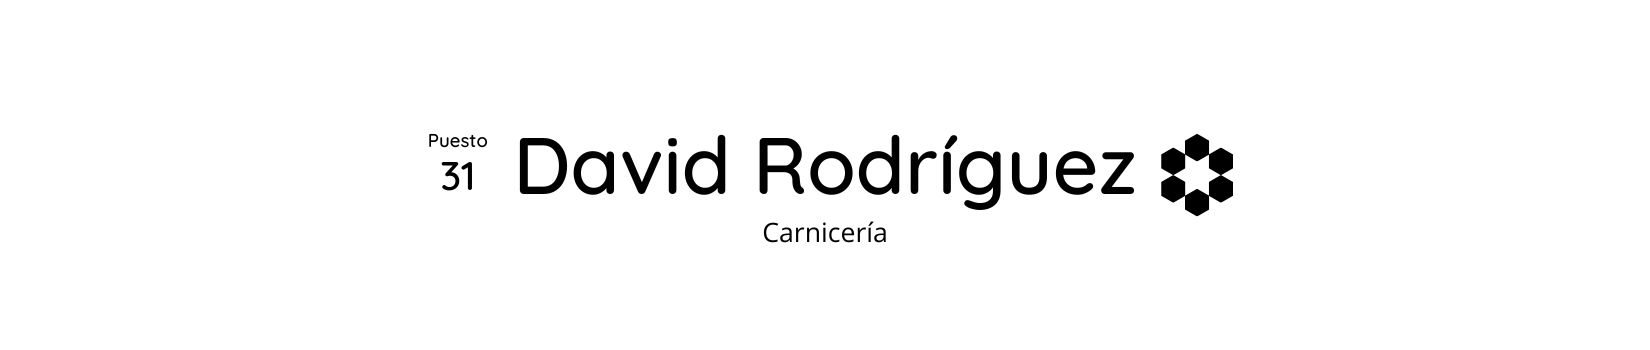 Mercados de abastos -  Carnicería David Rodríguez 31